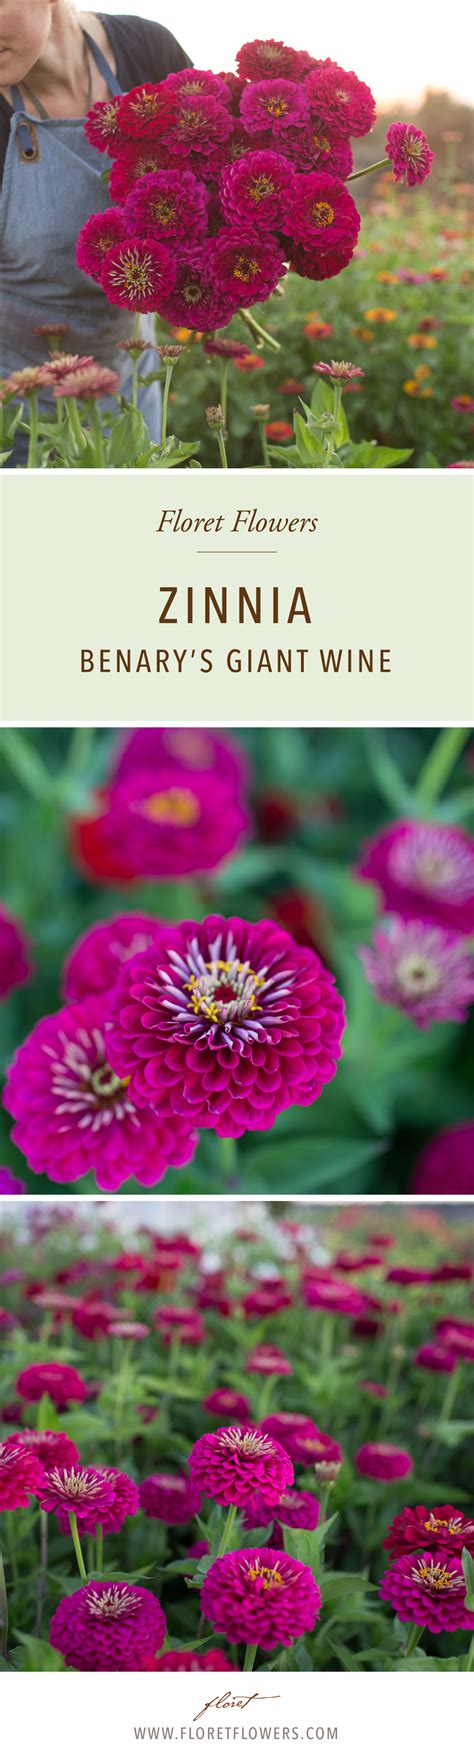 Zinnia Benarys Giant Wine Flower Farm Zinnias Flower Seeds